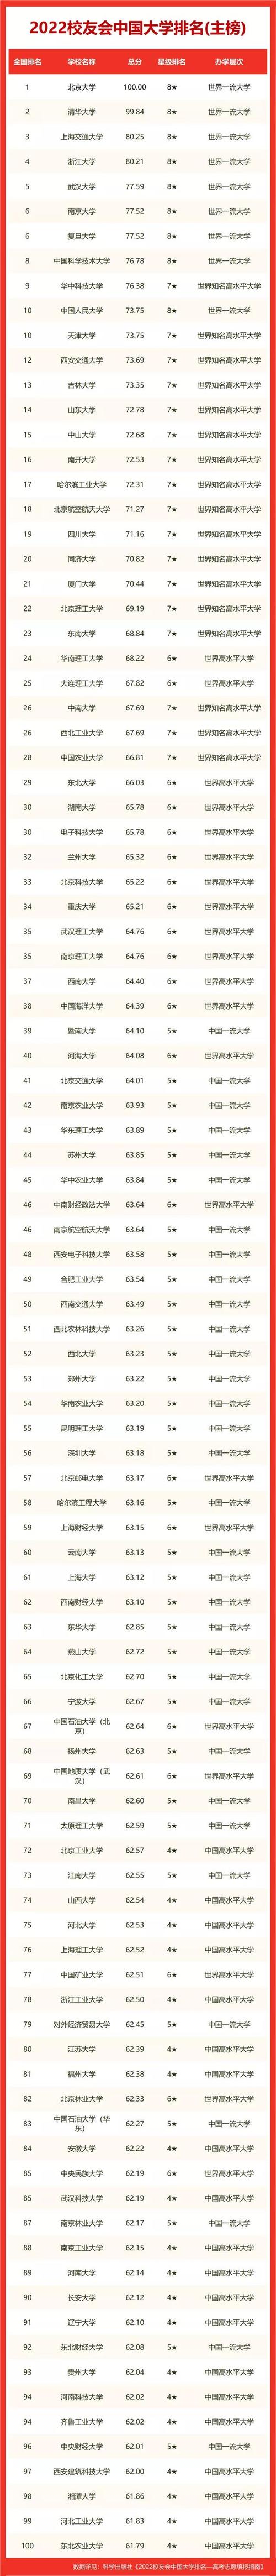 中国大学排行榜2022官方排名_中国大学排名最新排名官方